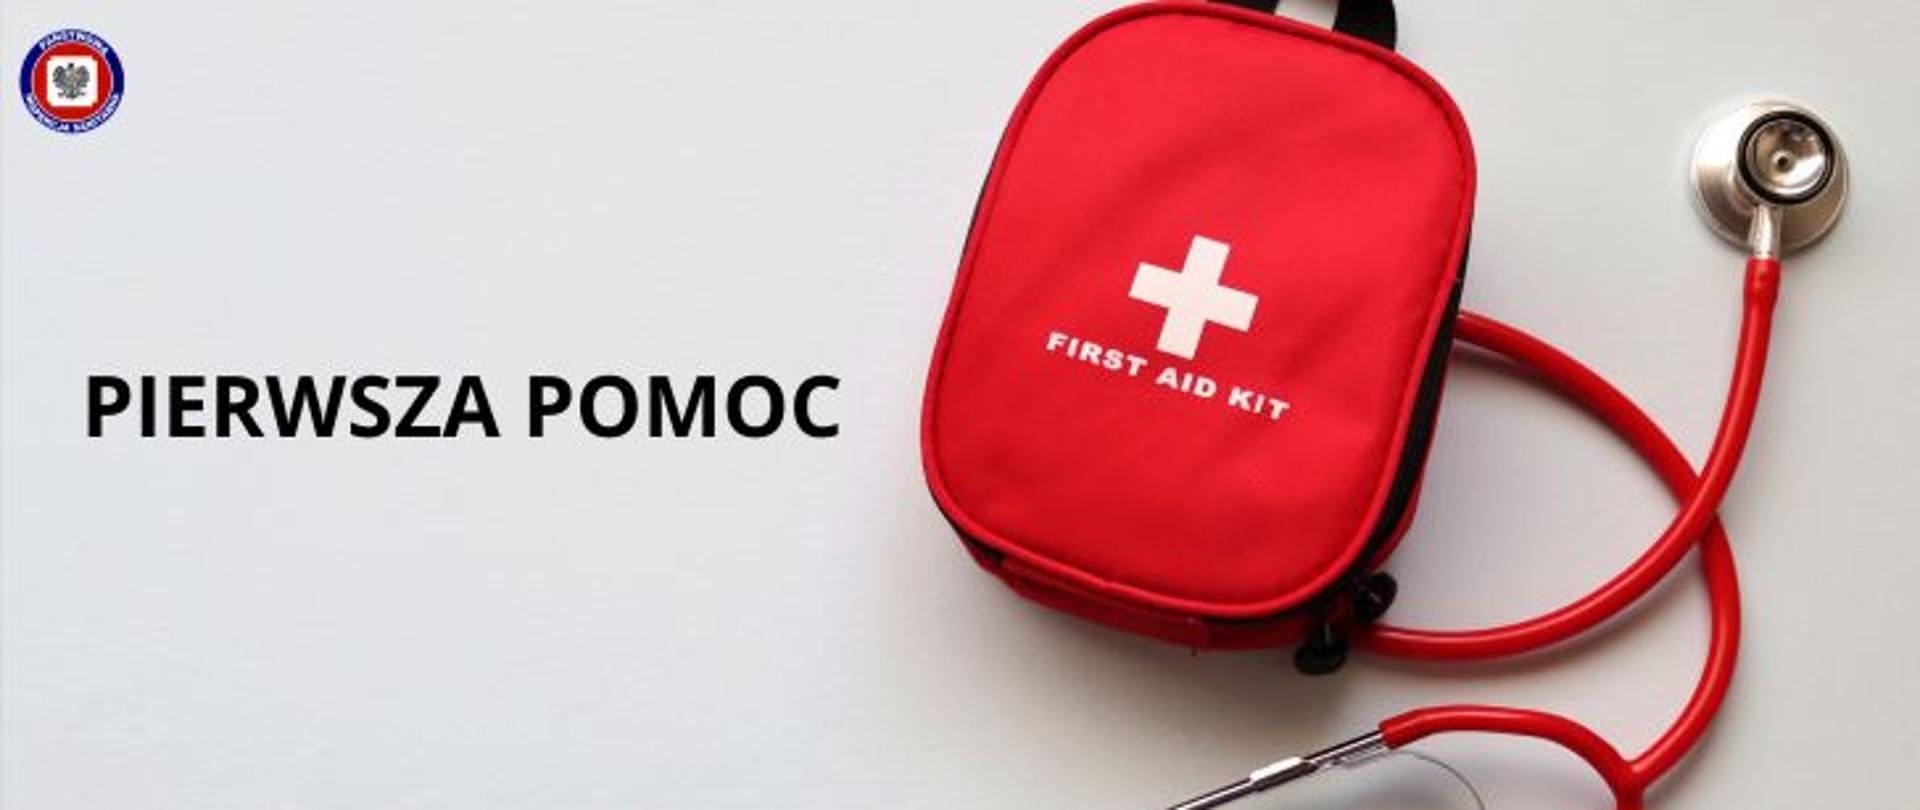 Na jasnoszarym tle czerwona apteczka i stetoskop, po lewej ciemny napis pierwsza pomoc. w Lewym górnym rogu logo Państwowej Inspekcji Sanitarnej.